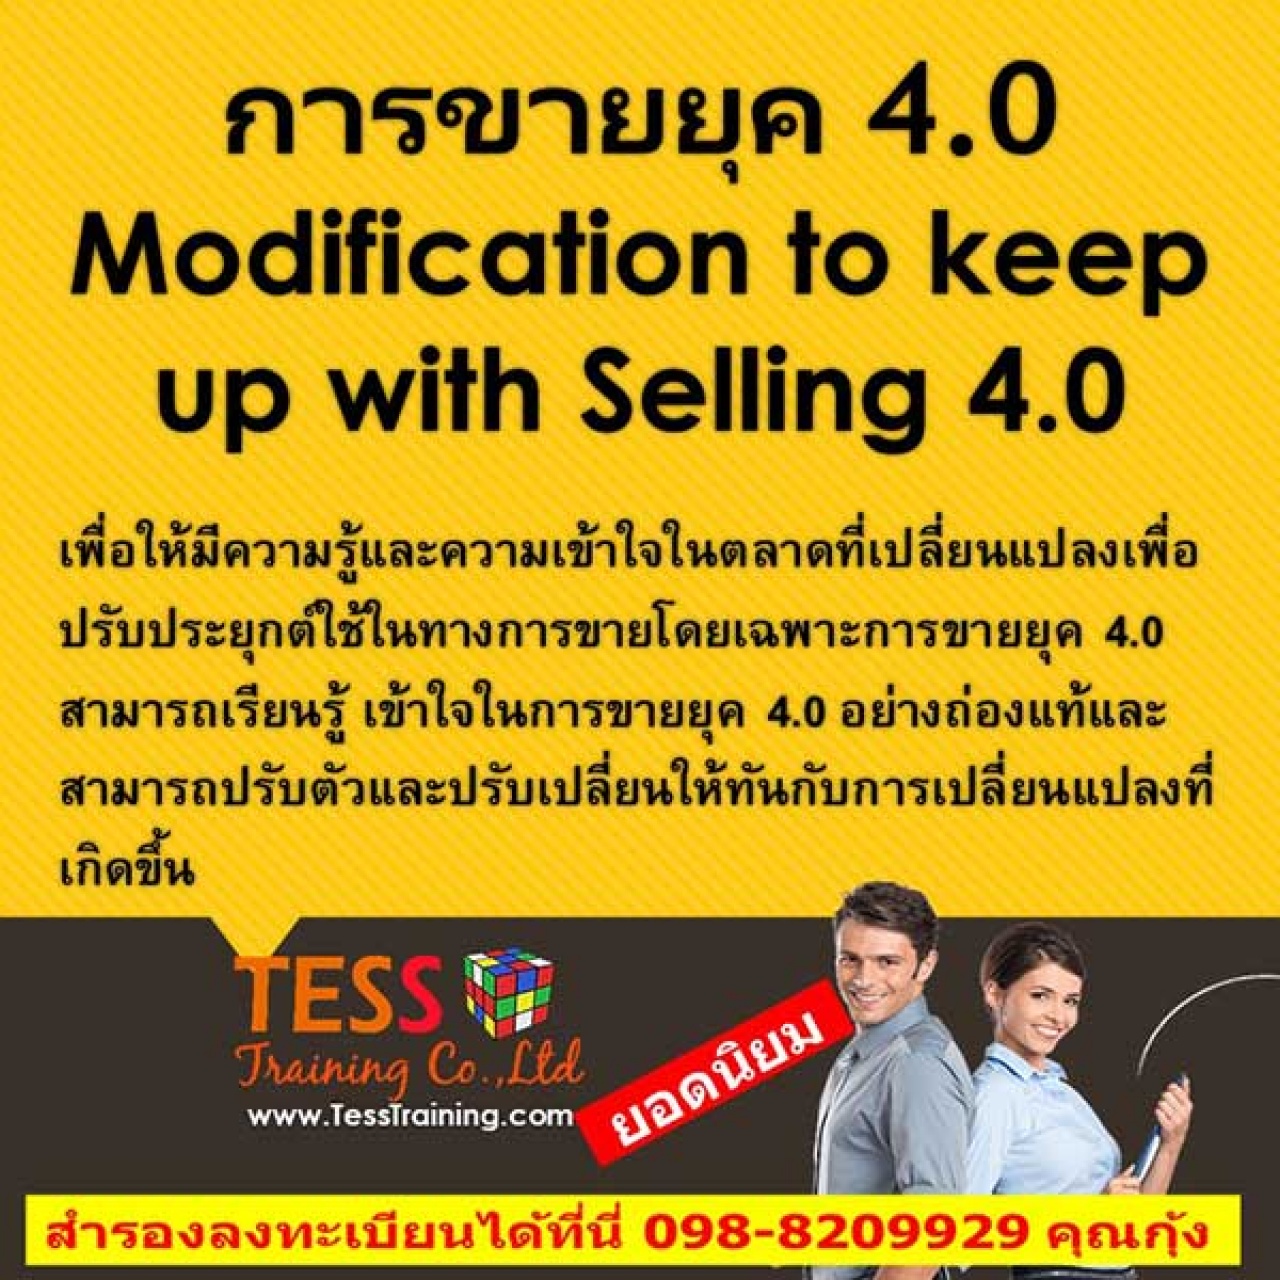 ยืนยัน หลักสูตร เทคนิคการขายยุค 4.0 Modification to keep up with Selling 4.0 (15 มิ.ย.62)